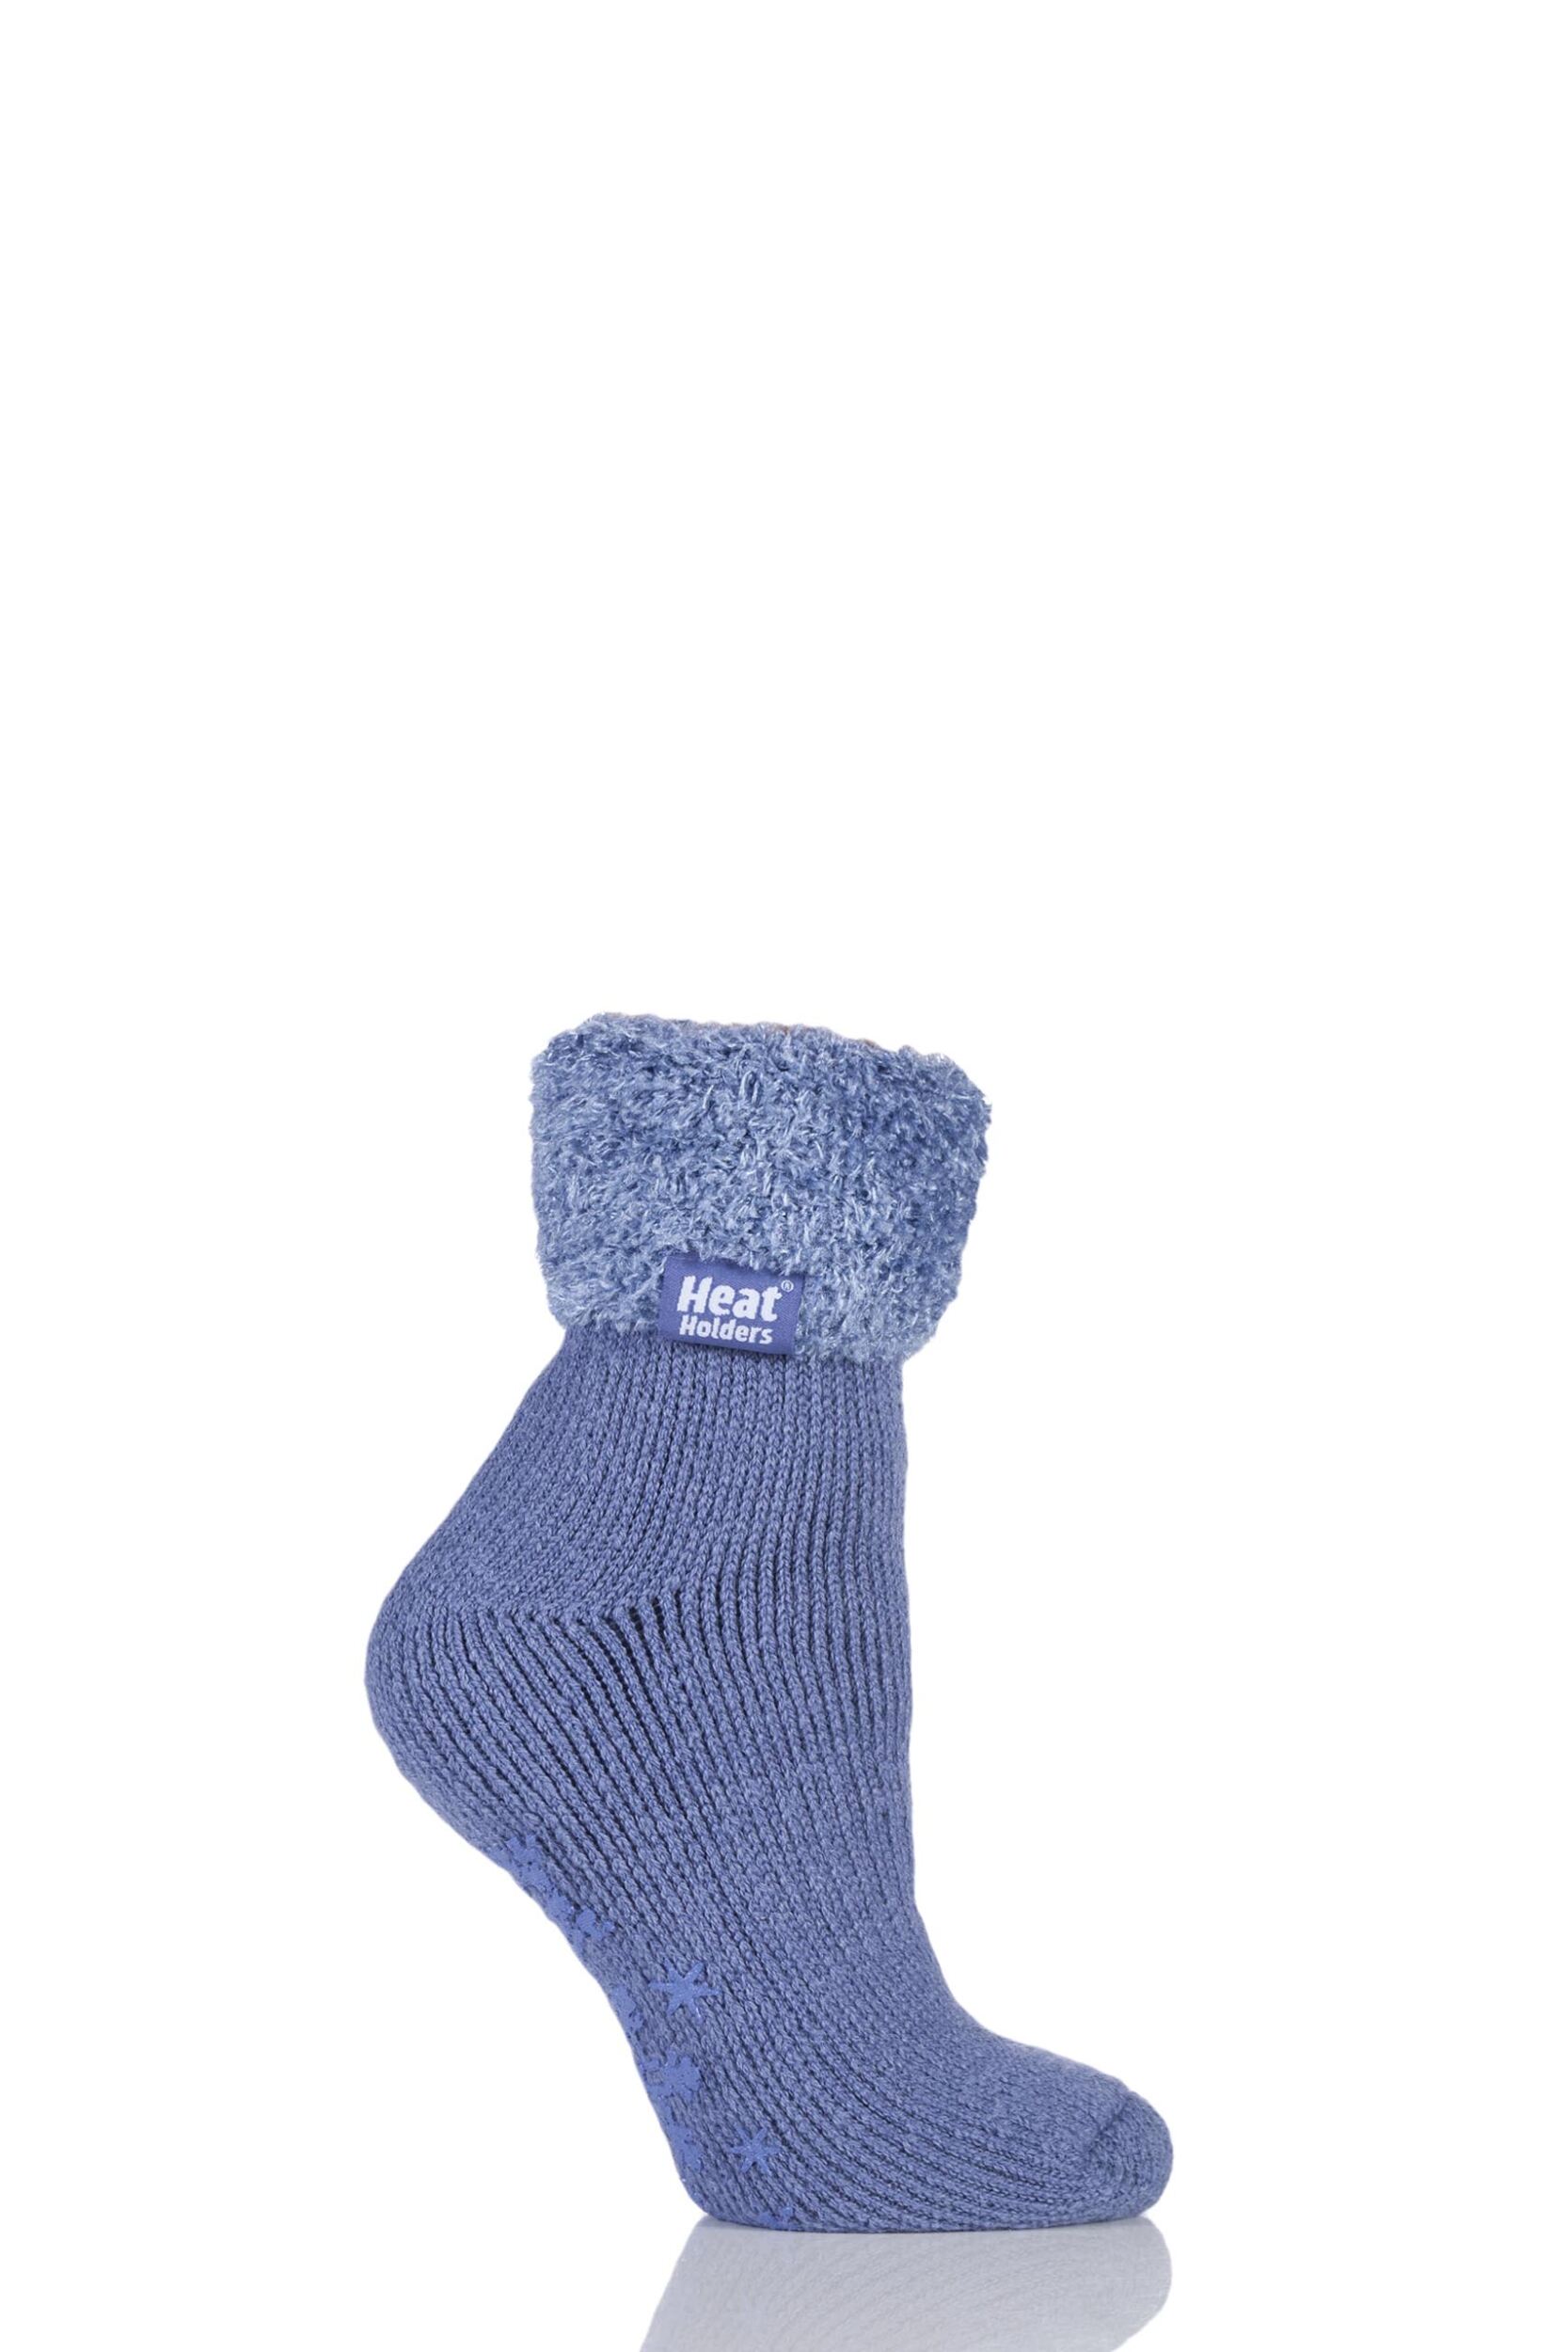 Ladies 1 Pair SockShop Heat Holders 2.3 TOG Thermal Lounge Socks | eBay